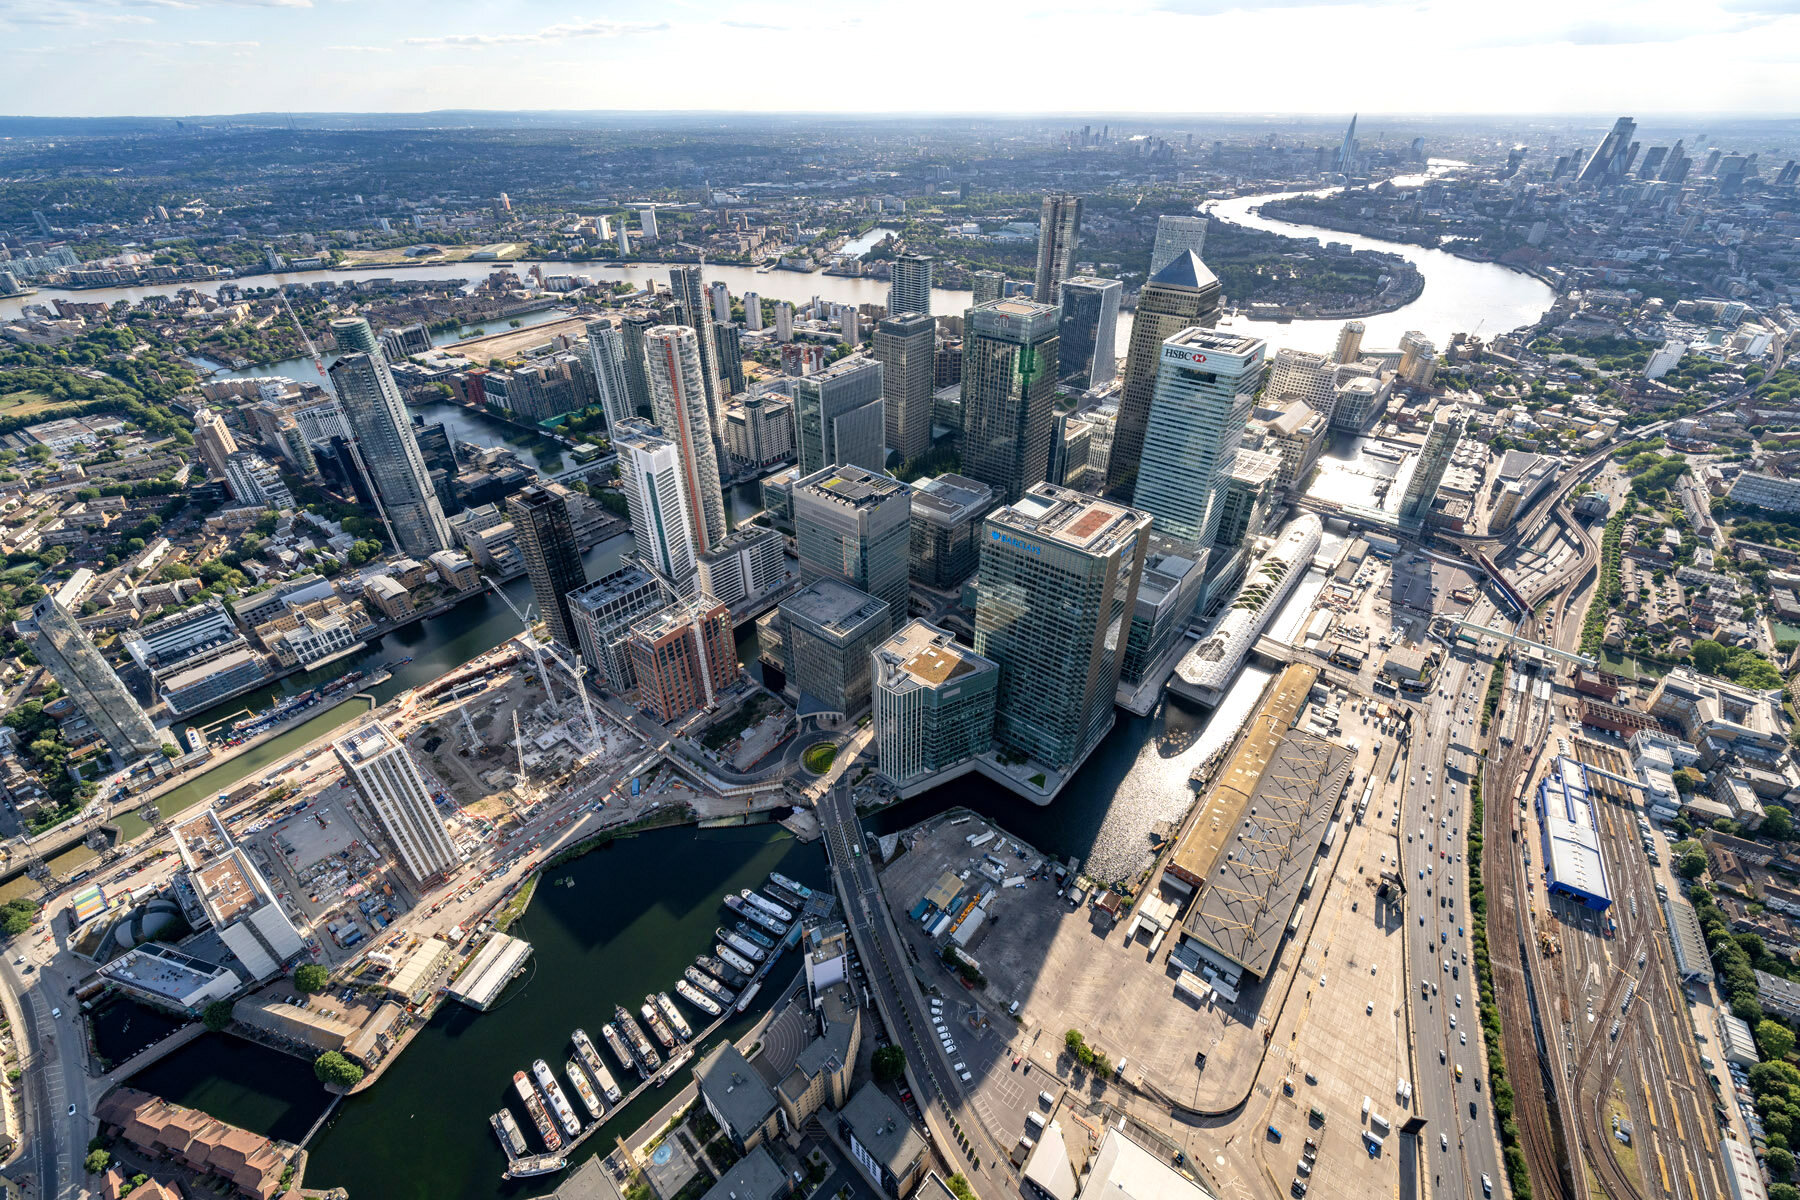  Canary Wharf Aerial Photography - July 2020 © Joas Souza 